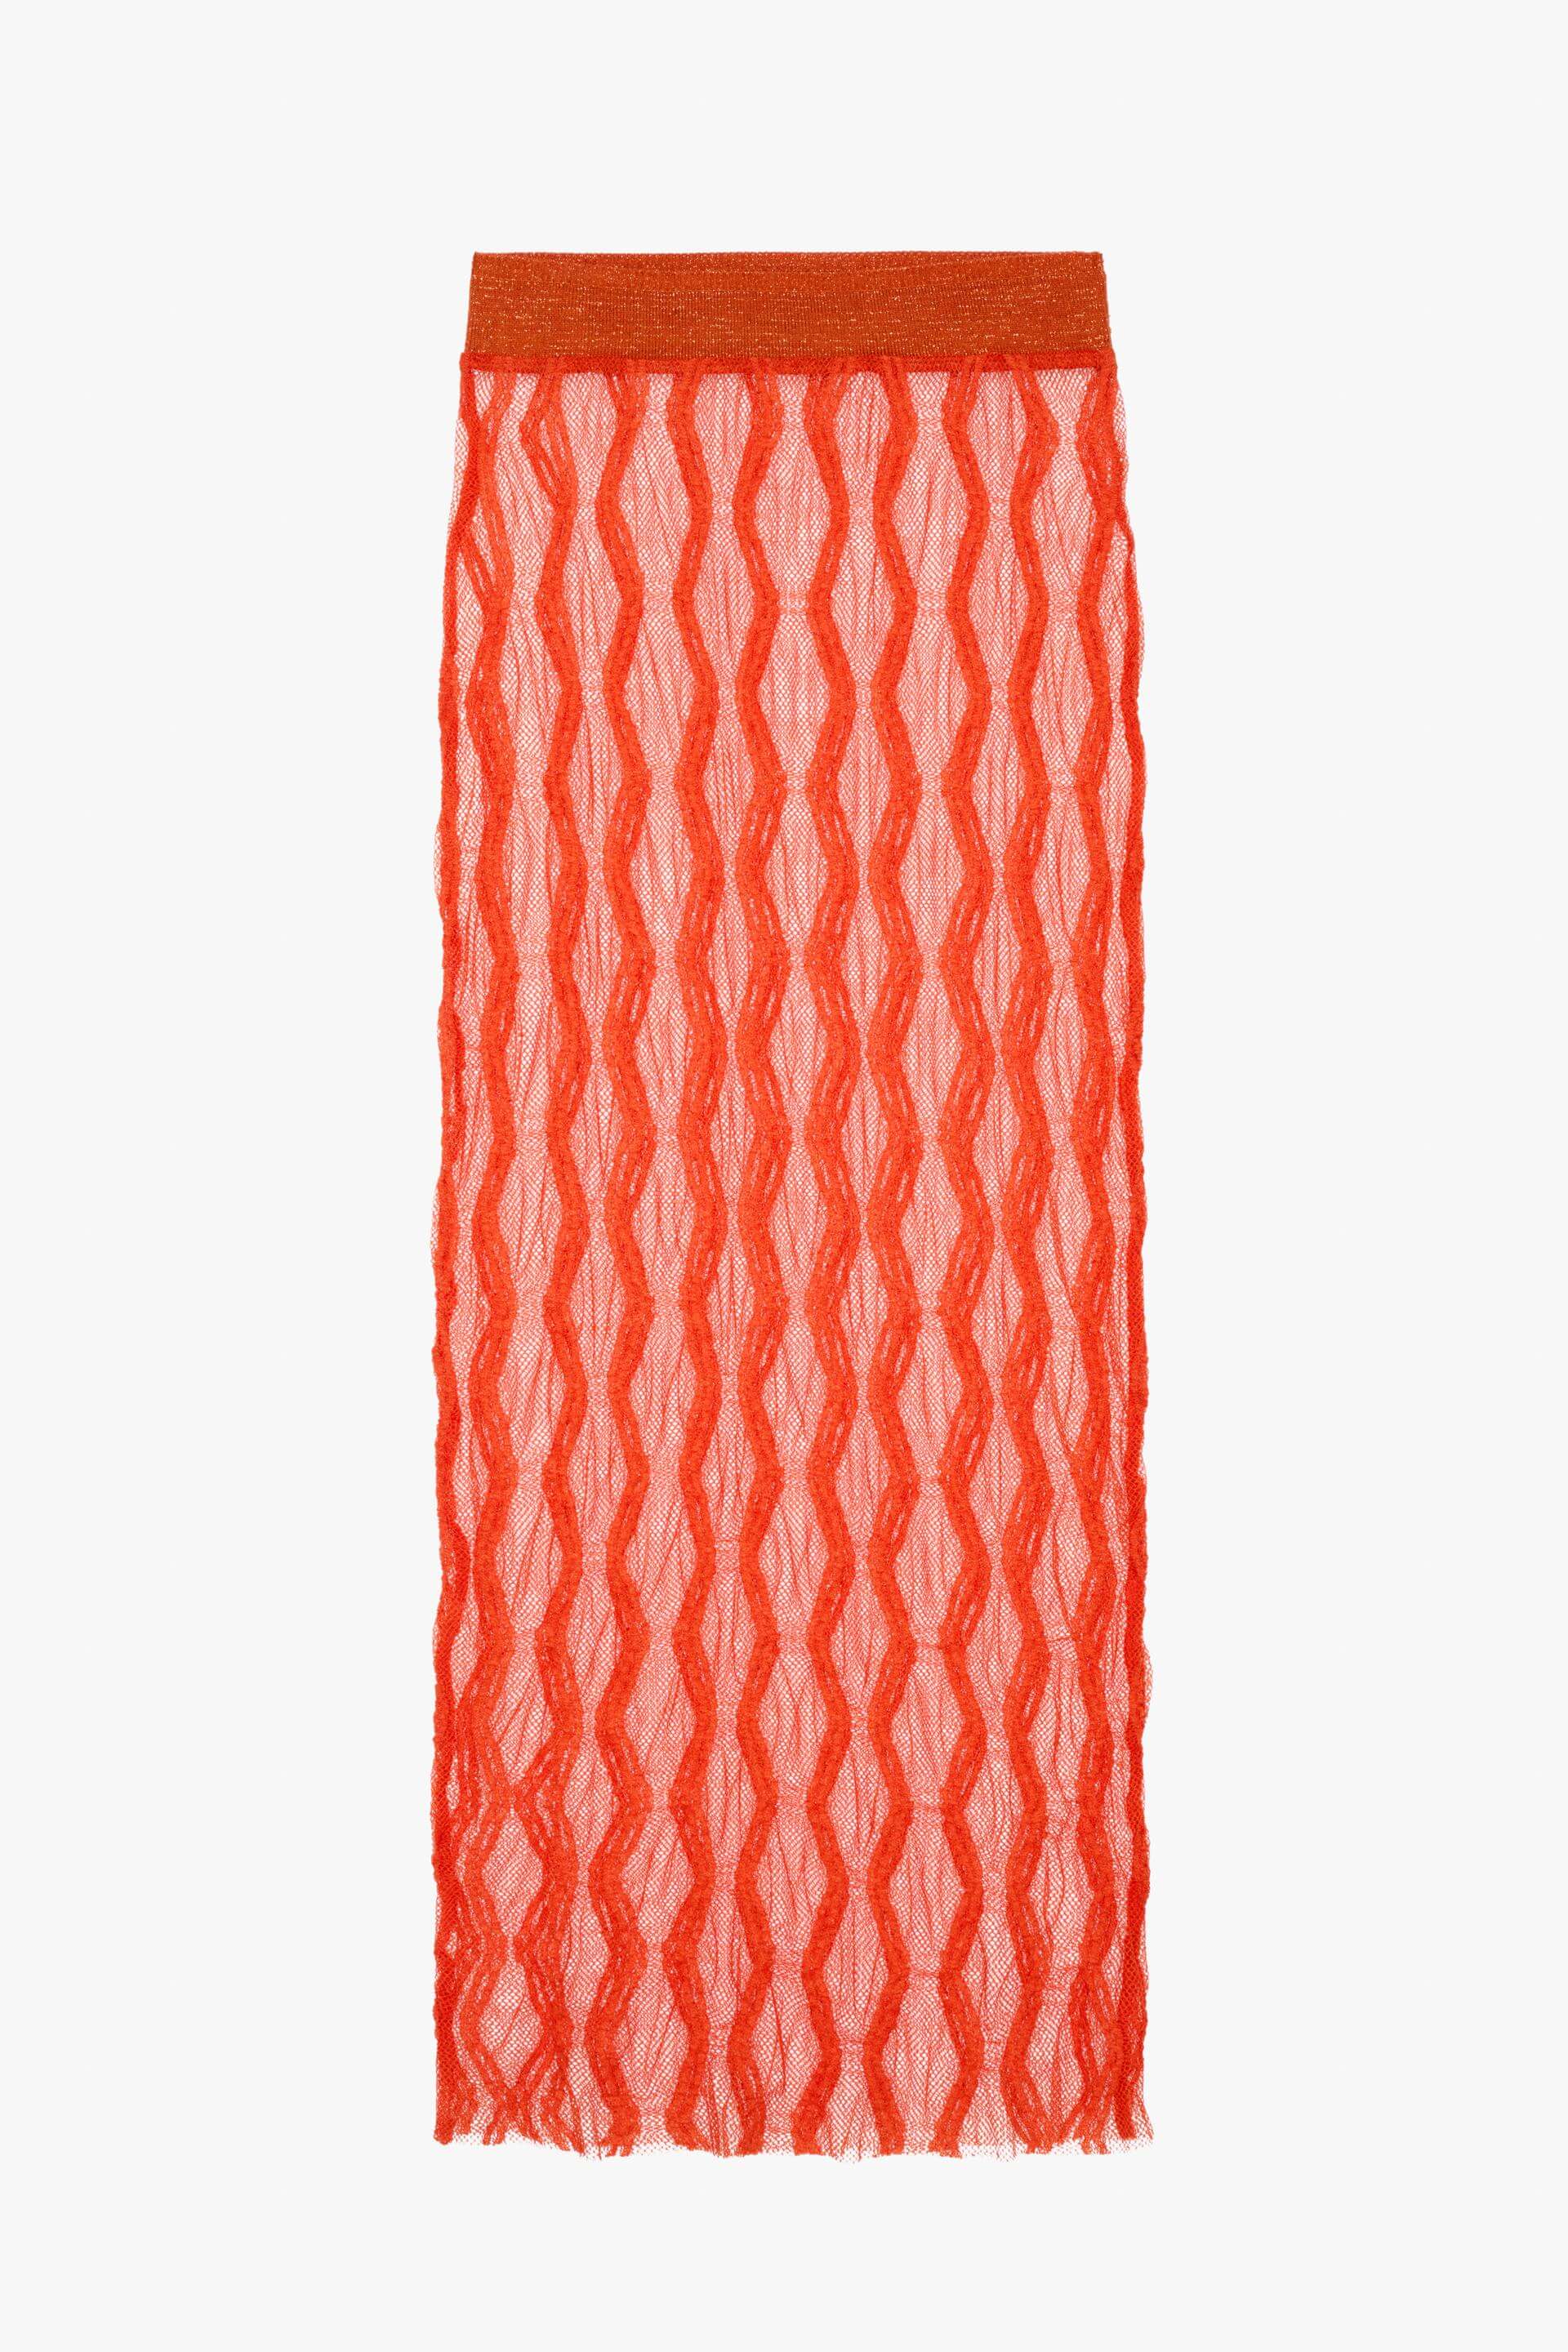 Юбка Zara Knit - Limited Edition, оранжевый юбка миди сетчатая со складками и оборками универсальная юбка трапеция с высокой талией и эластичным поясом в корейском стиле лето 2022